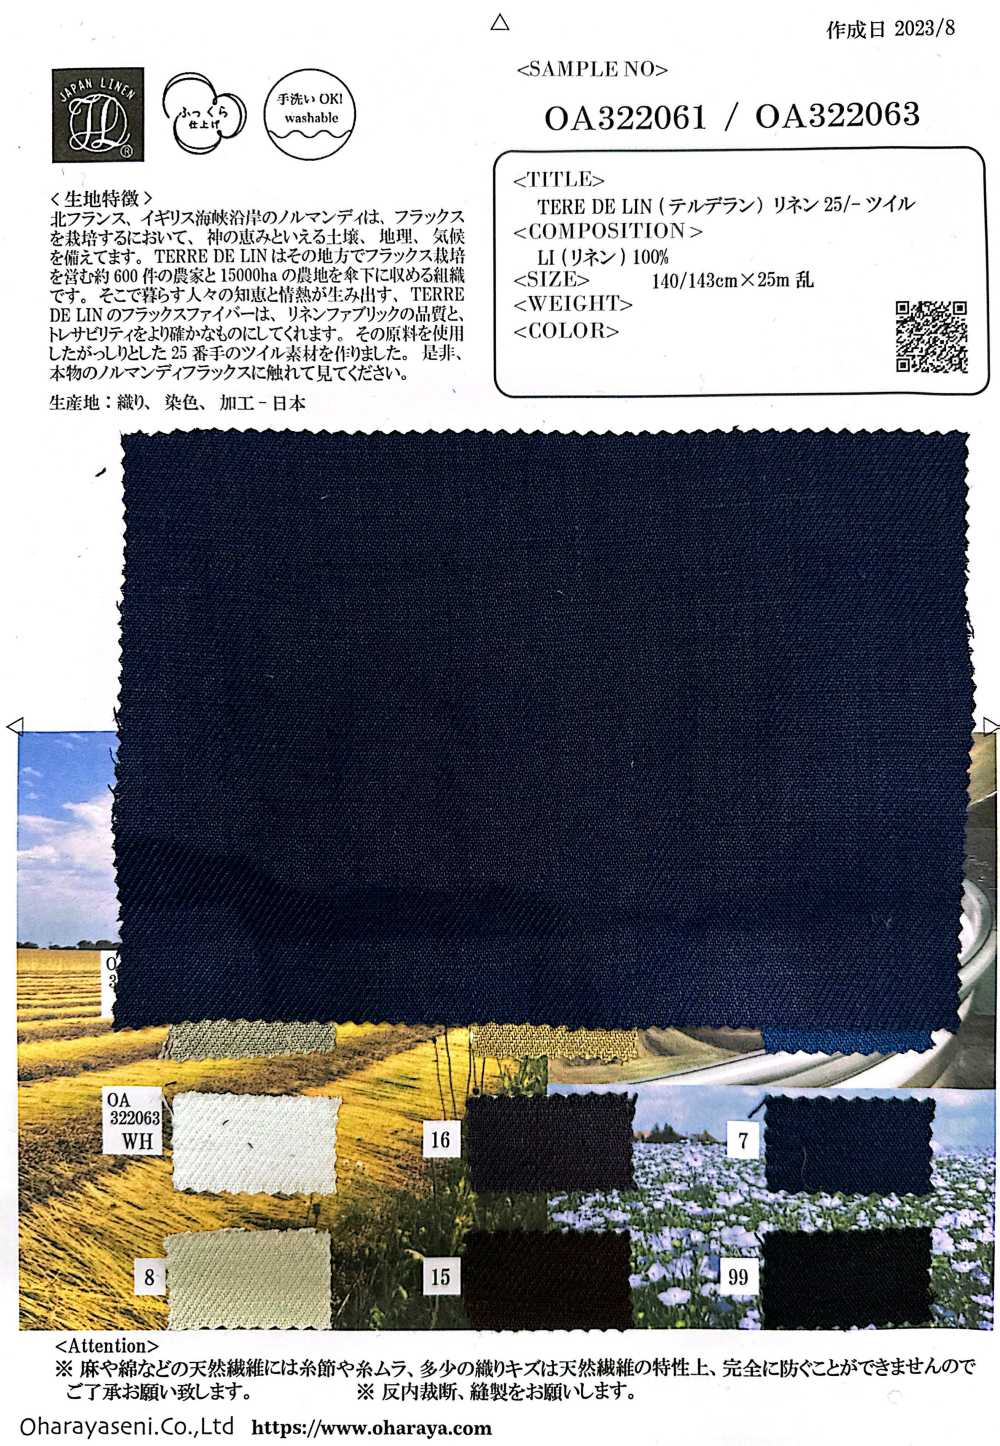 OA322061 TERE DE LIN Linen 25/-Twill[Textile / Fabric] Oharayaseni